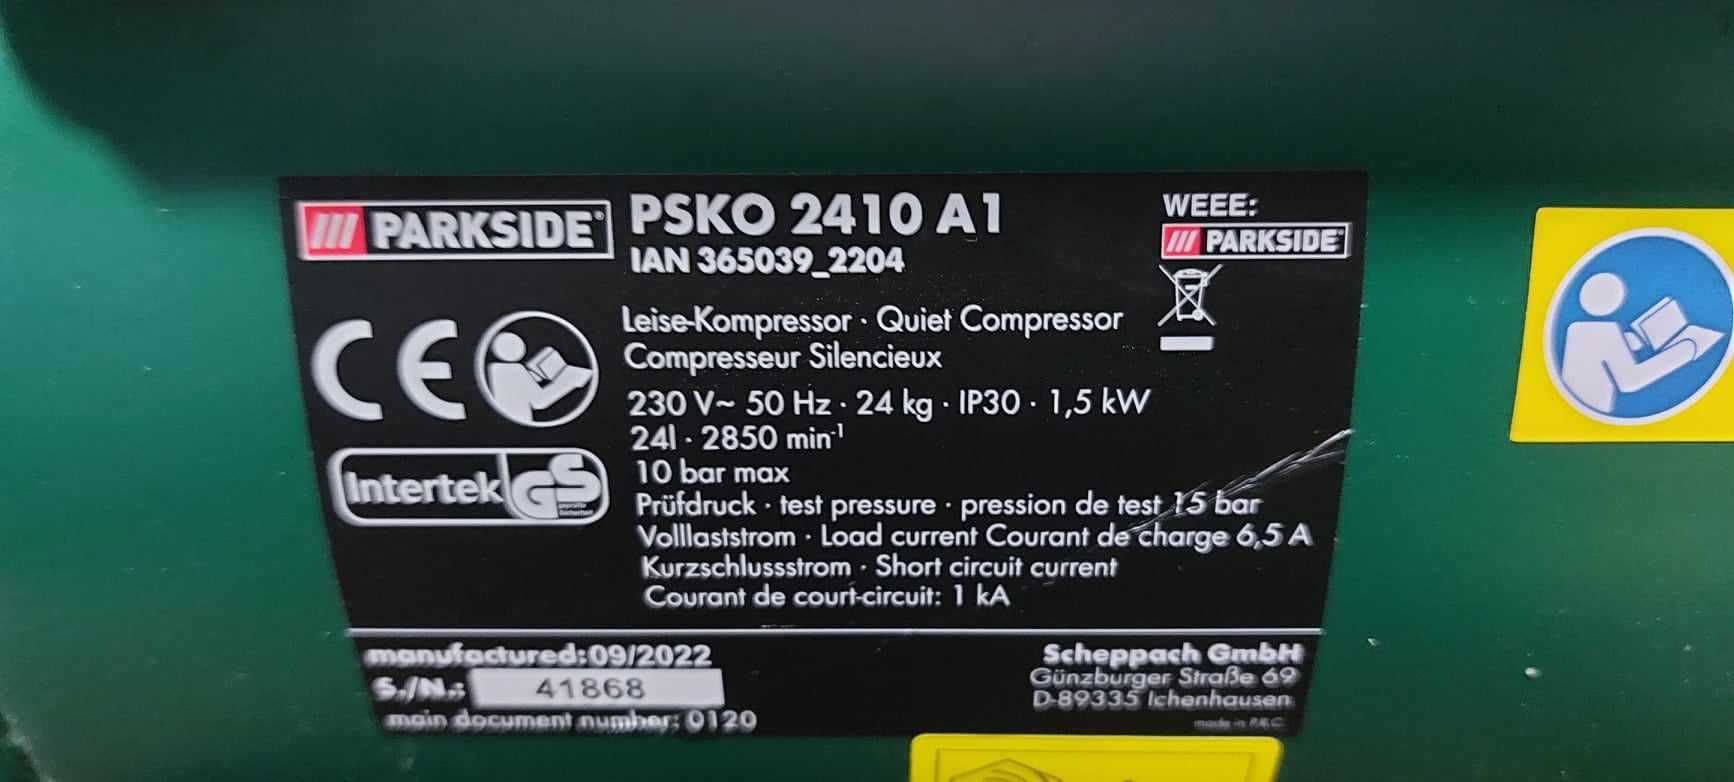 Kompresor cichy wyciszony Parkside PSKO A1 • Sierakowice 2410